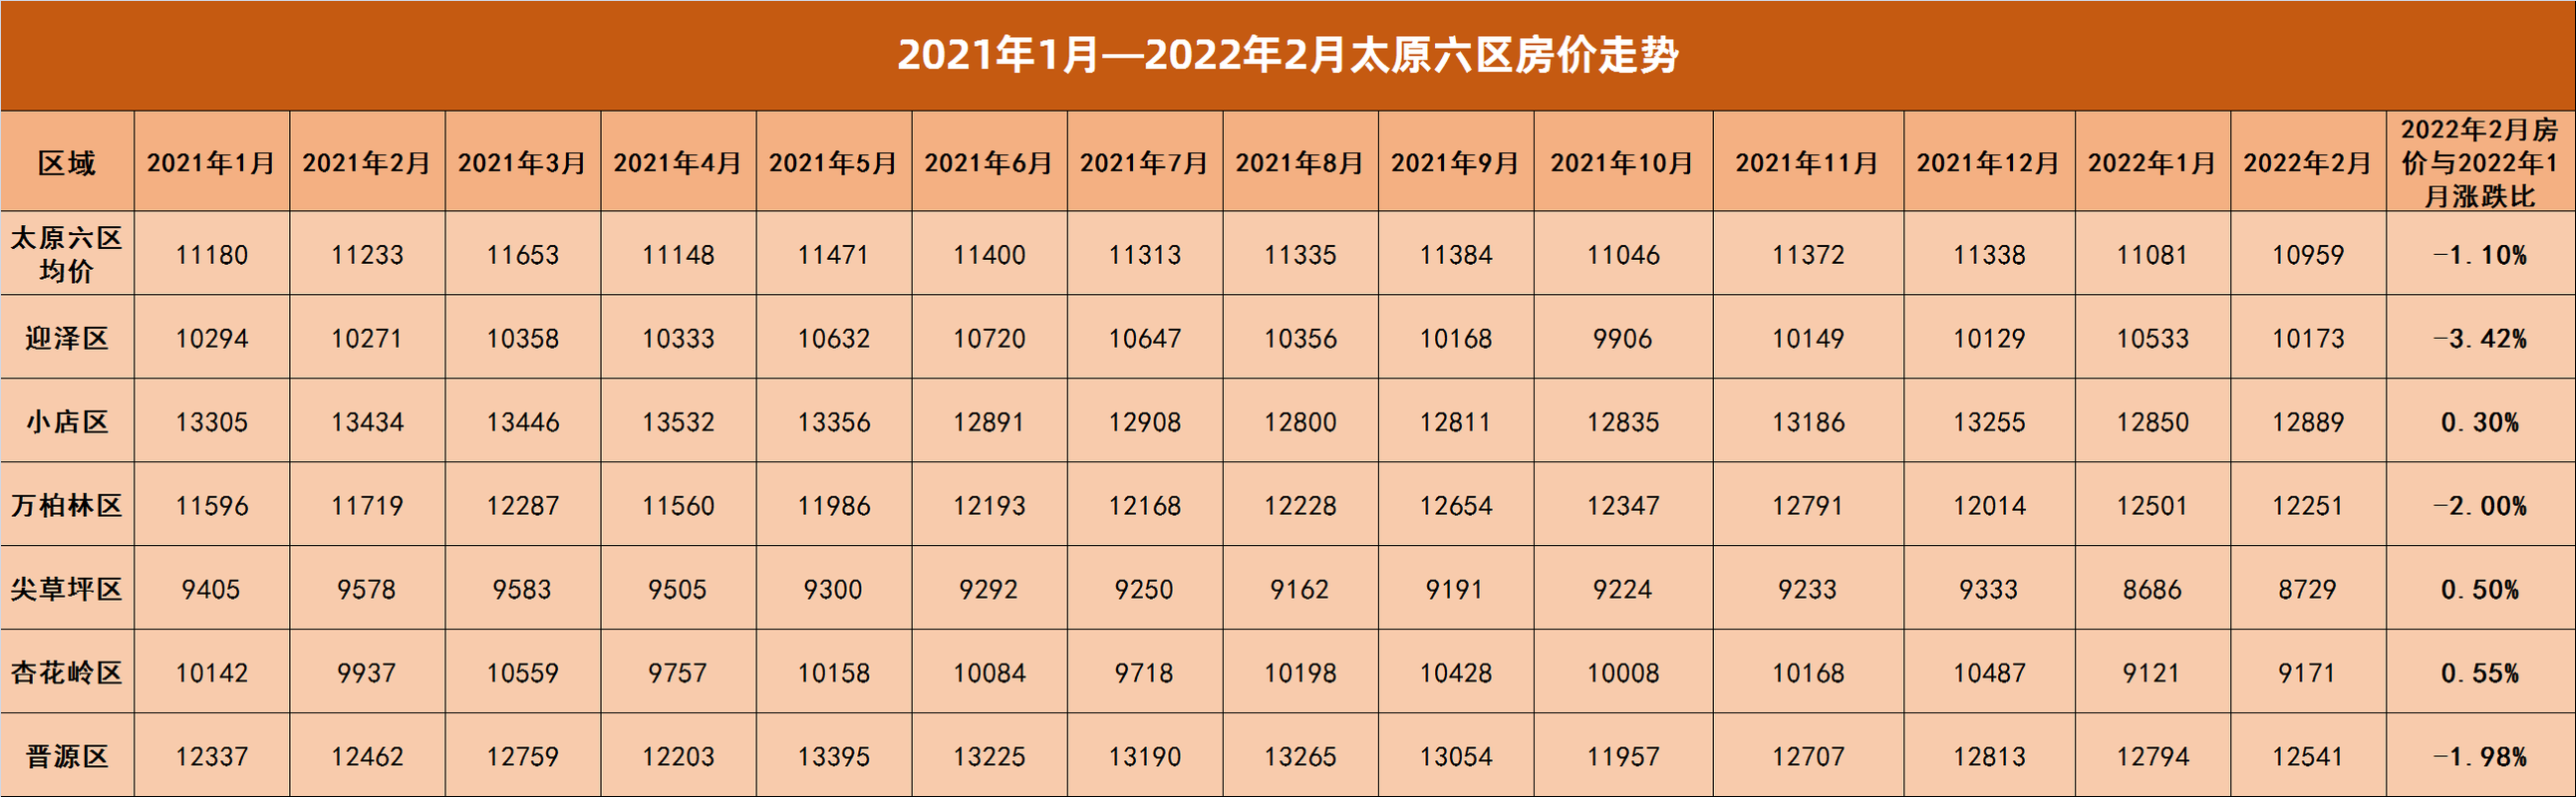 太原2月六城区平均房价为10959元/㎡,较2022年1月房价下跌了1